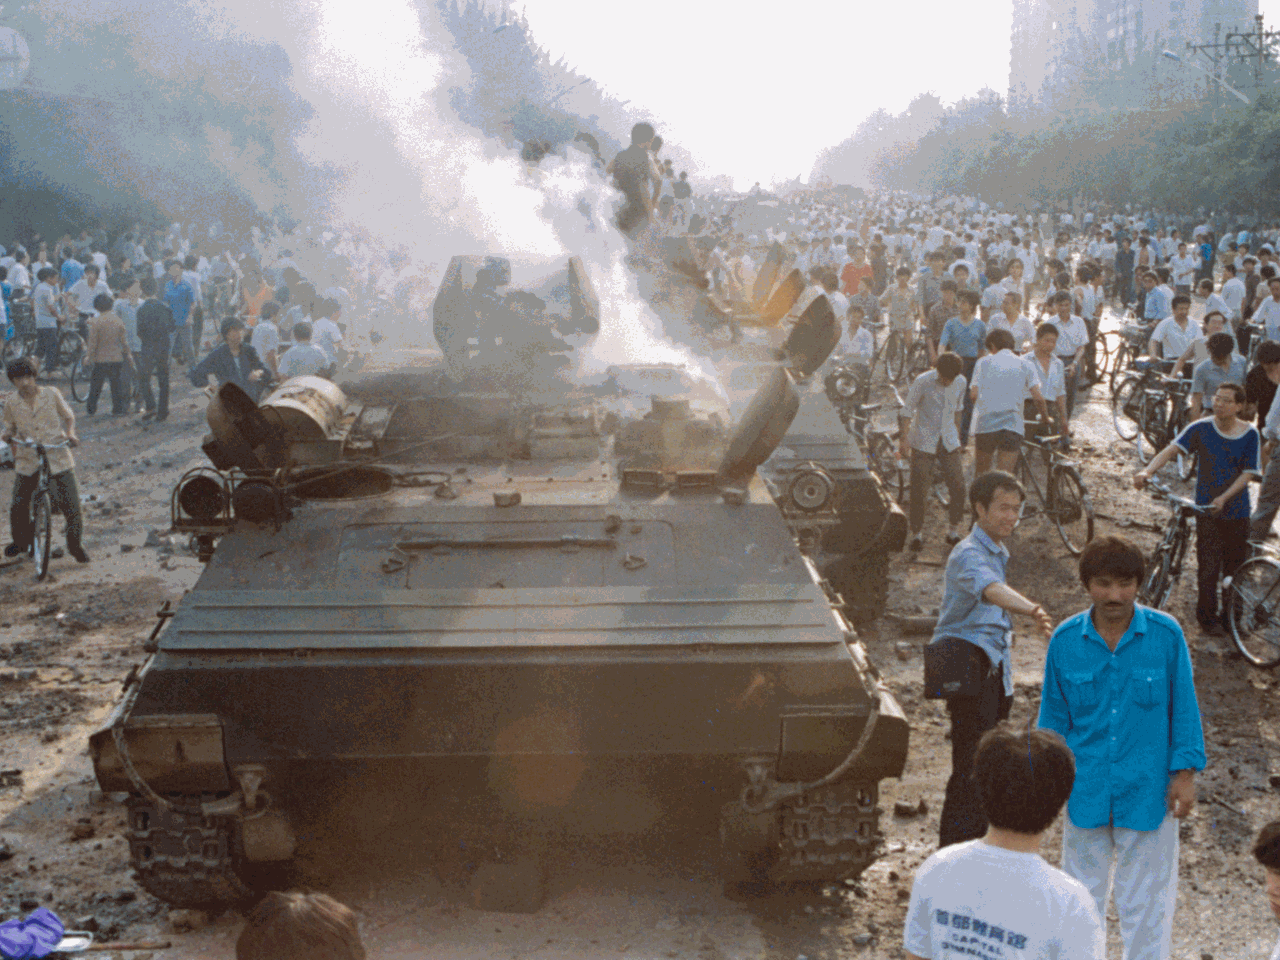 Demonstranten setzen auf dem Platz des himmlischen Friedens (Tian'anmen) in Peking am 03.06.1989 einen Panzer in Brand. Am 3. und 4. Juni lies die chinesische Führung die Proteste der Bevölkerung für mehr Demokratie und Freiheit auf dem Plat